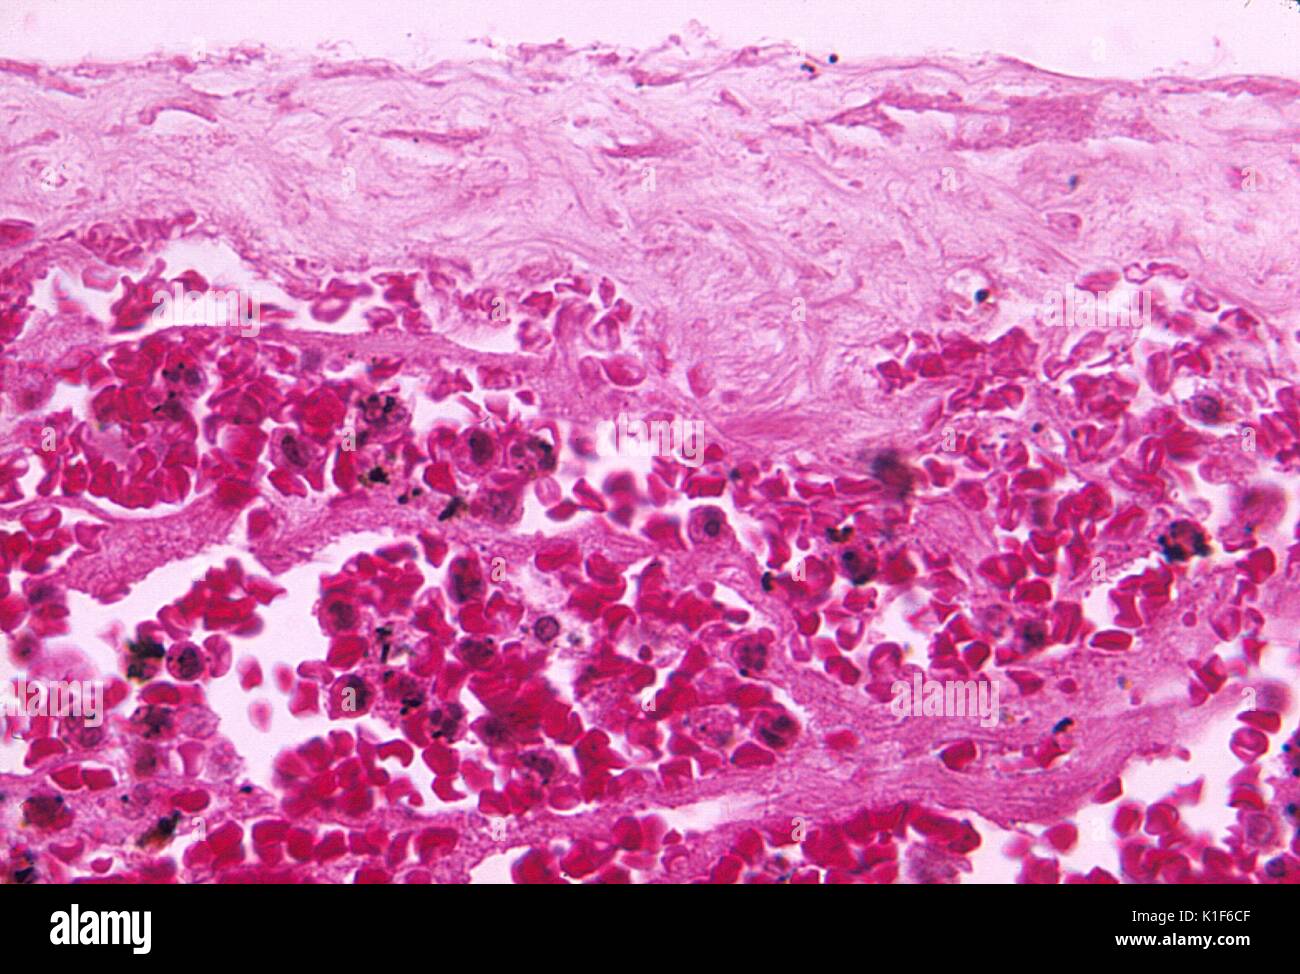 Photomicrograph der Meningen demonstrieren Blutungen aufgrund schwerwiegender Einatmunganthrax, Mag. 500x. Bild mit freundlicher Genehmigung von CDC/Dr. LaForce, 1967. Stockfoto